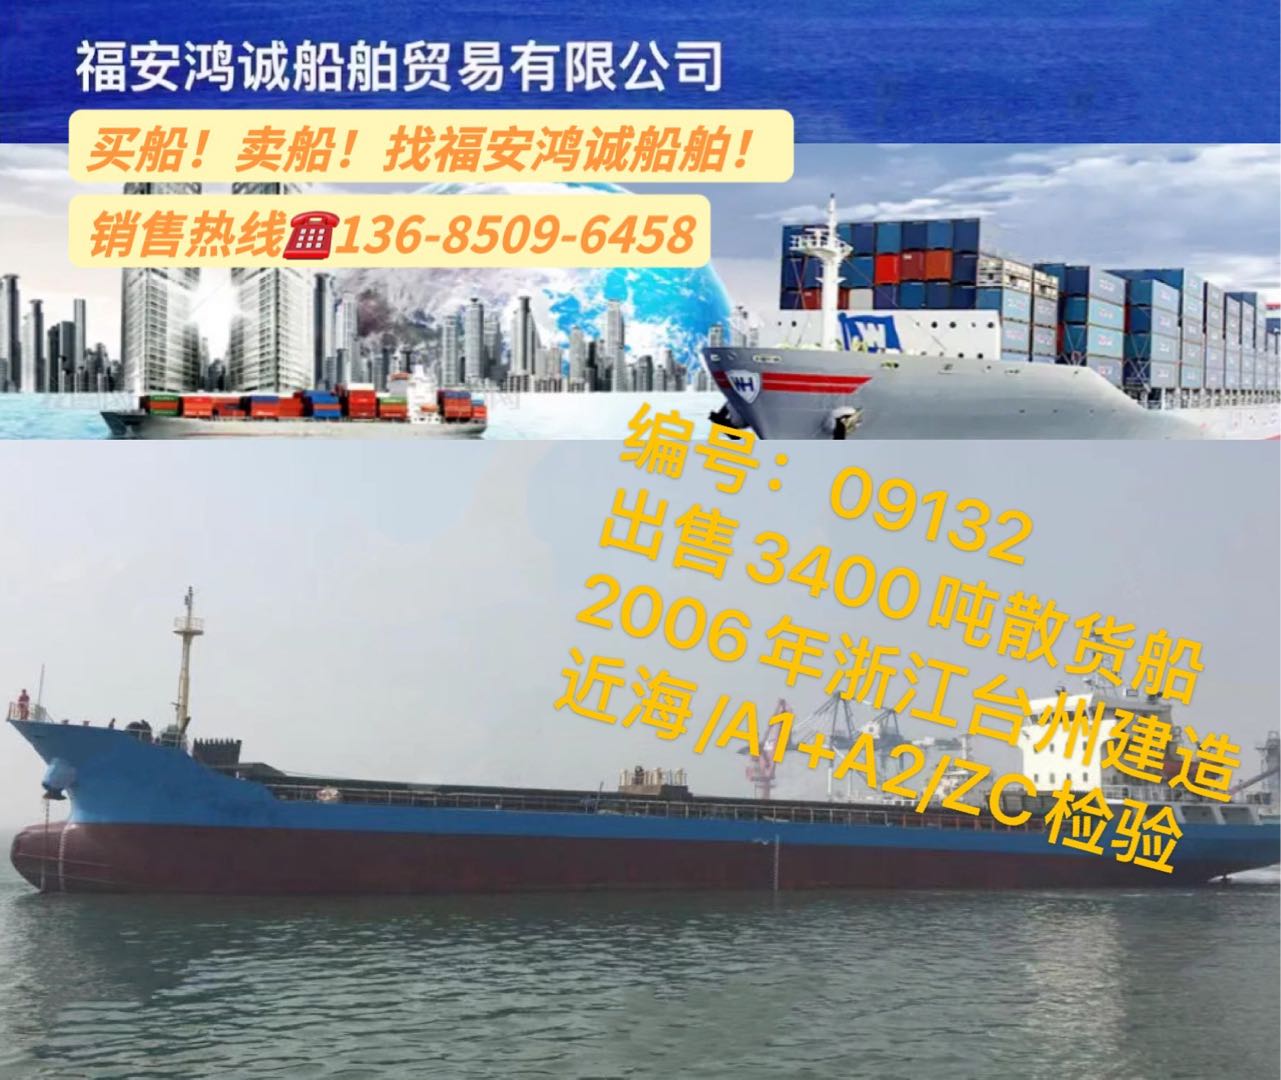 出售06年3400吨在航散货船